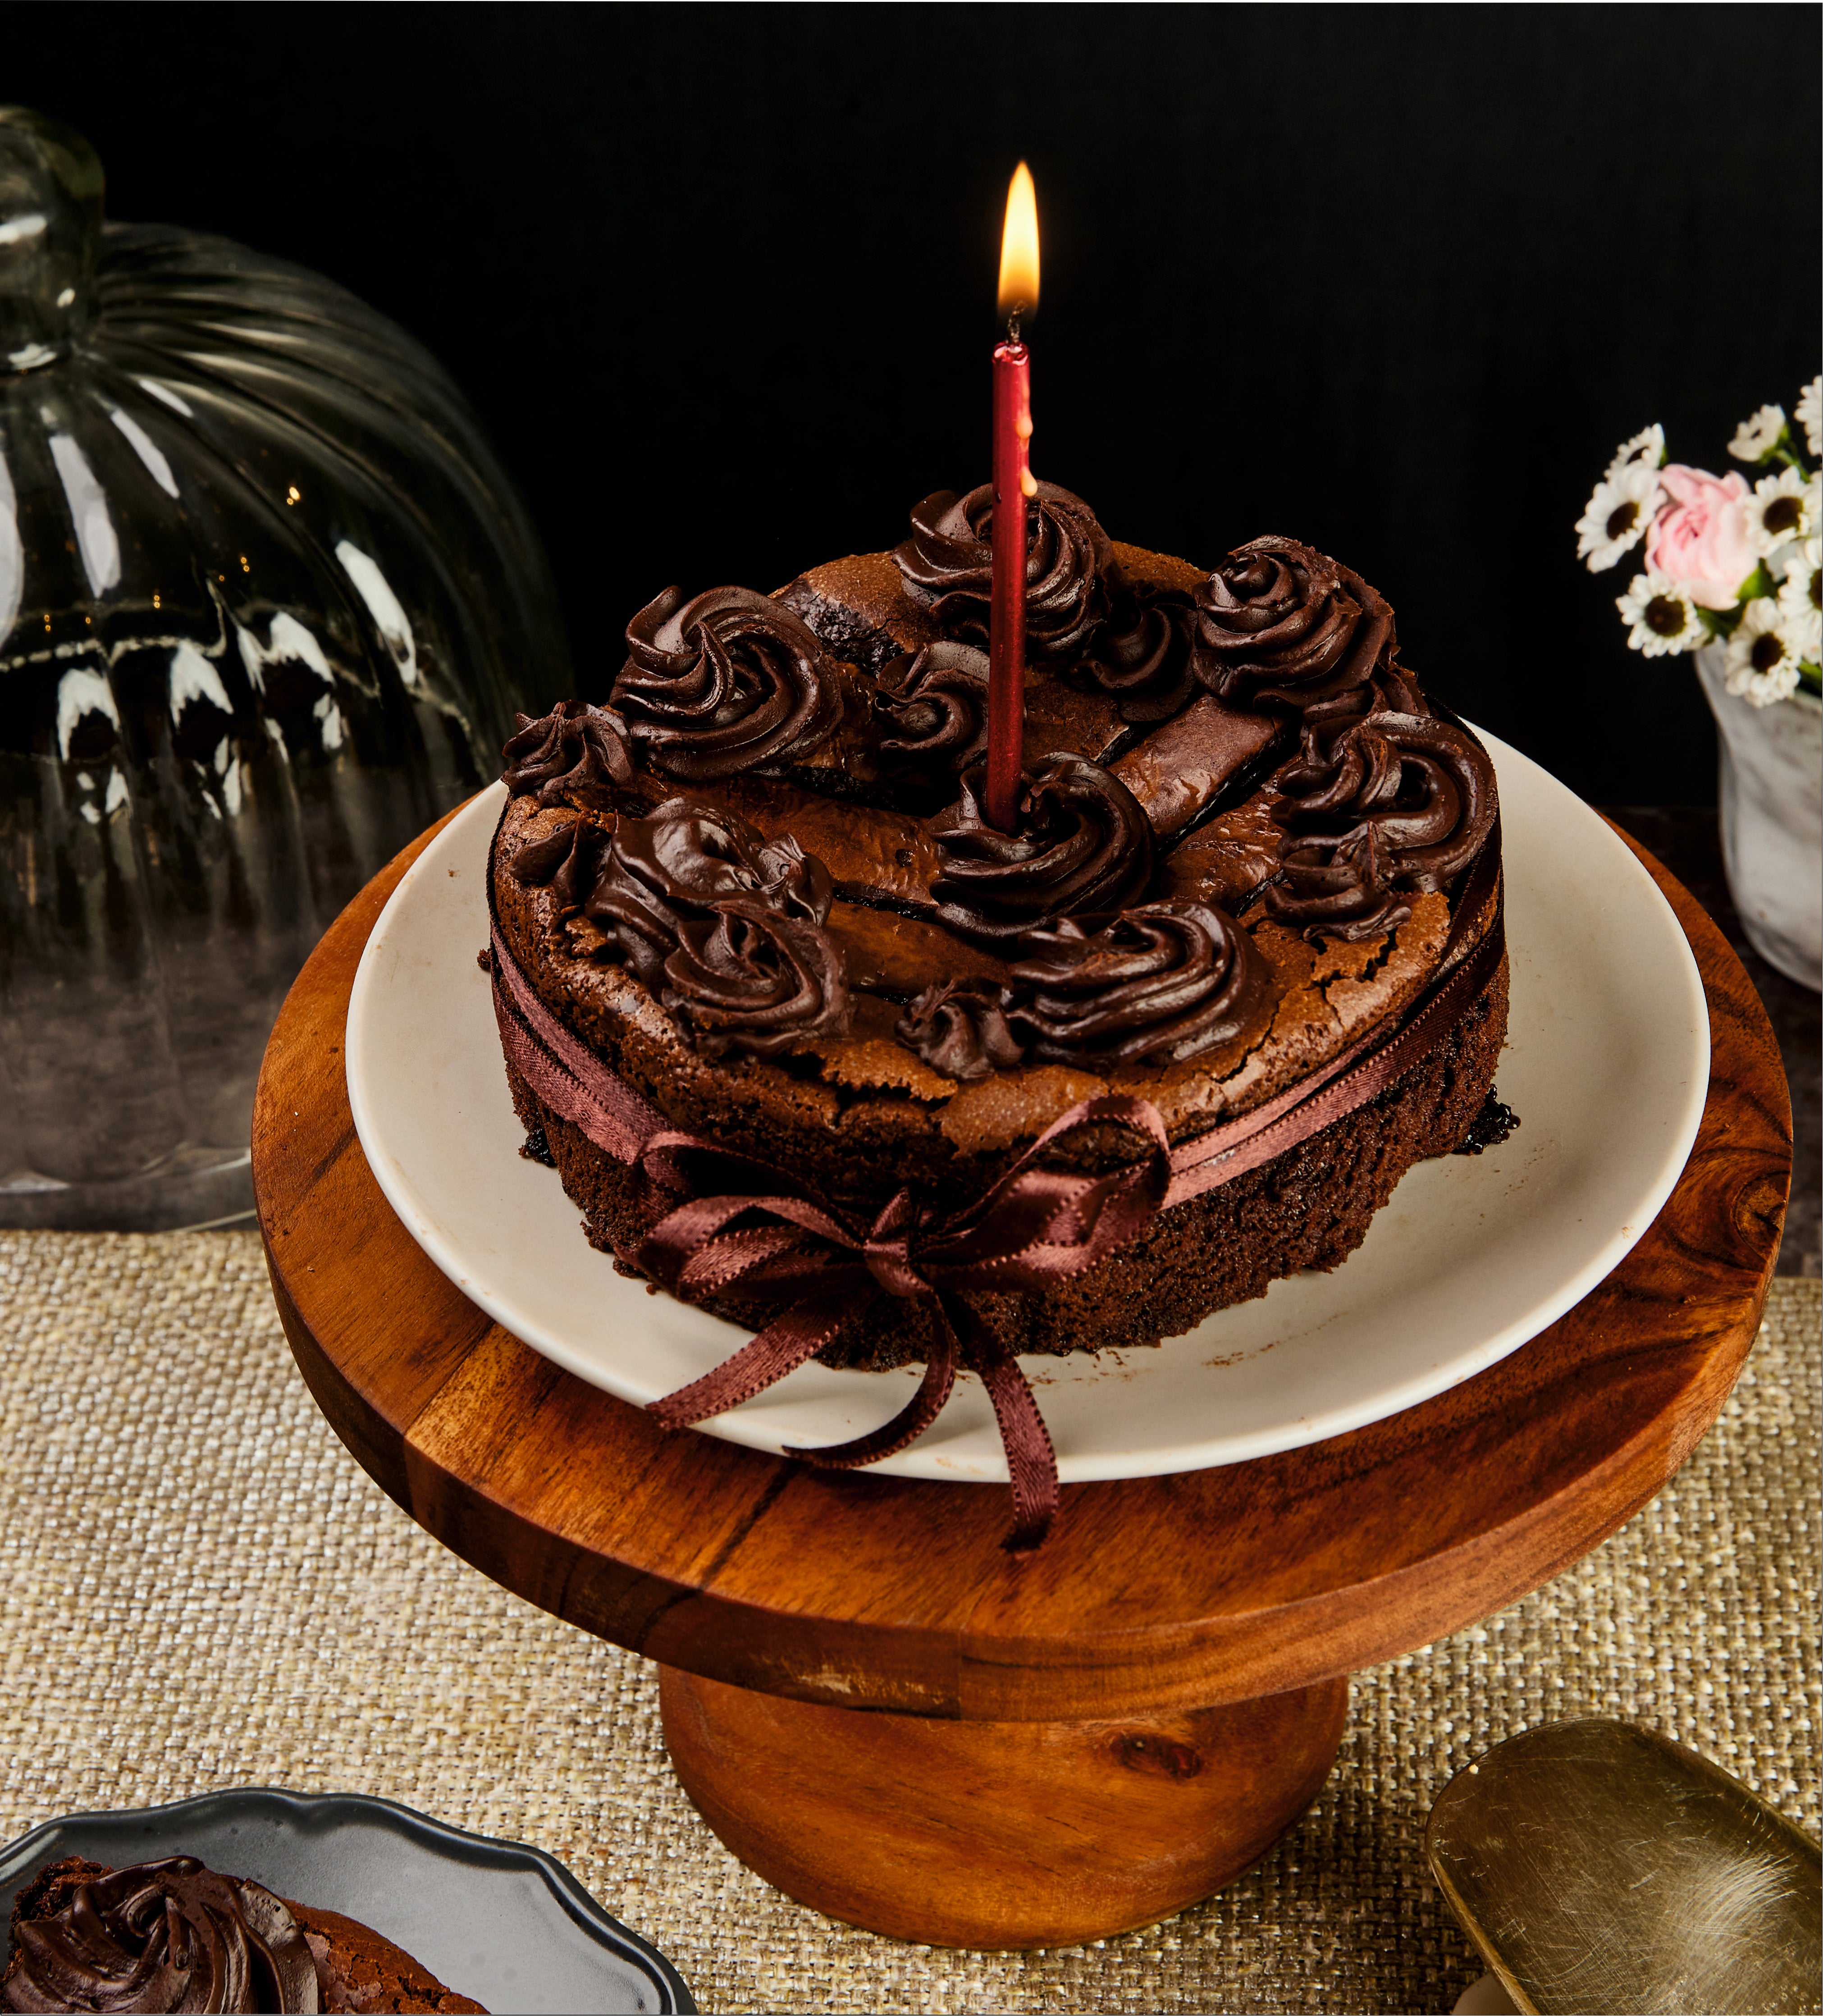 Gooey Chocolate Cake|Intense Belgian Truffle| 70% Dark